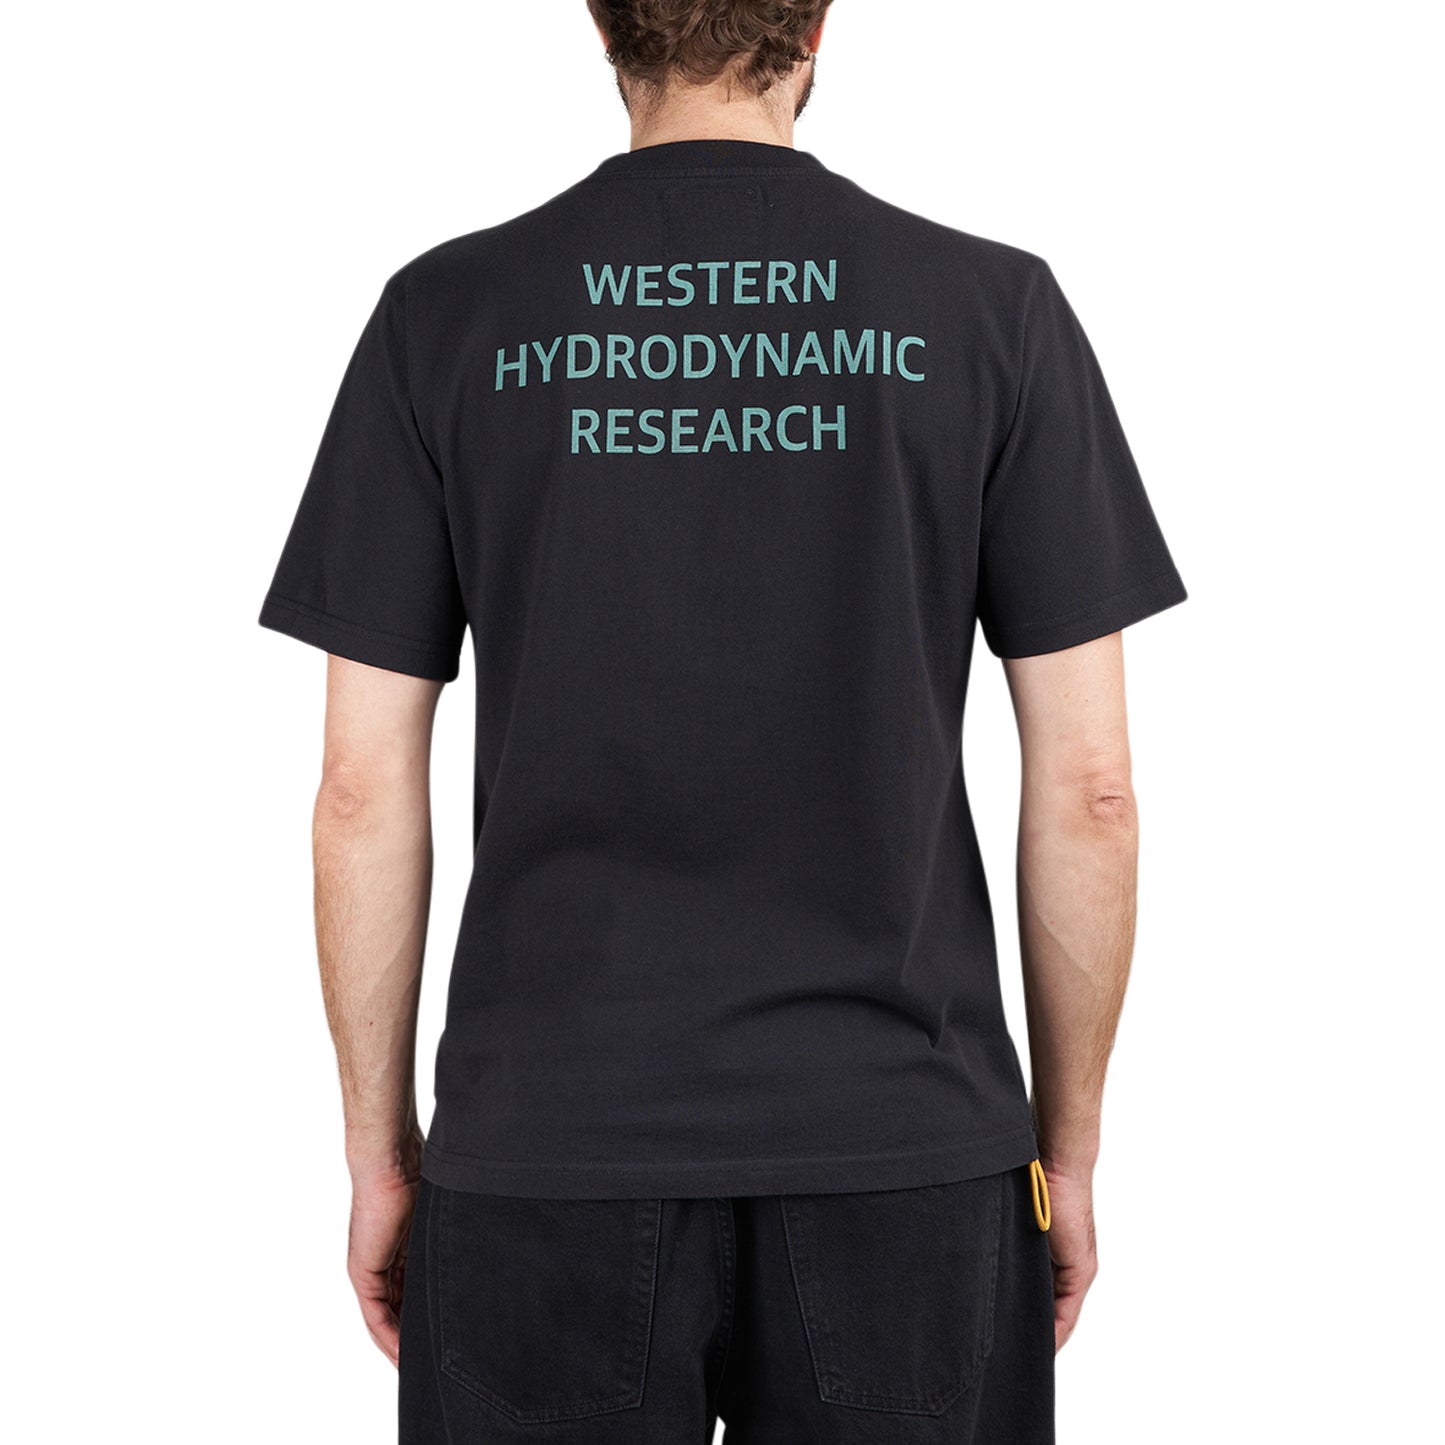 Western Hydrodynamic Research Worker Tee (Schwarz)  - Allike Store